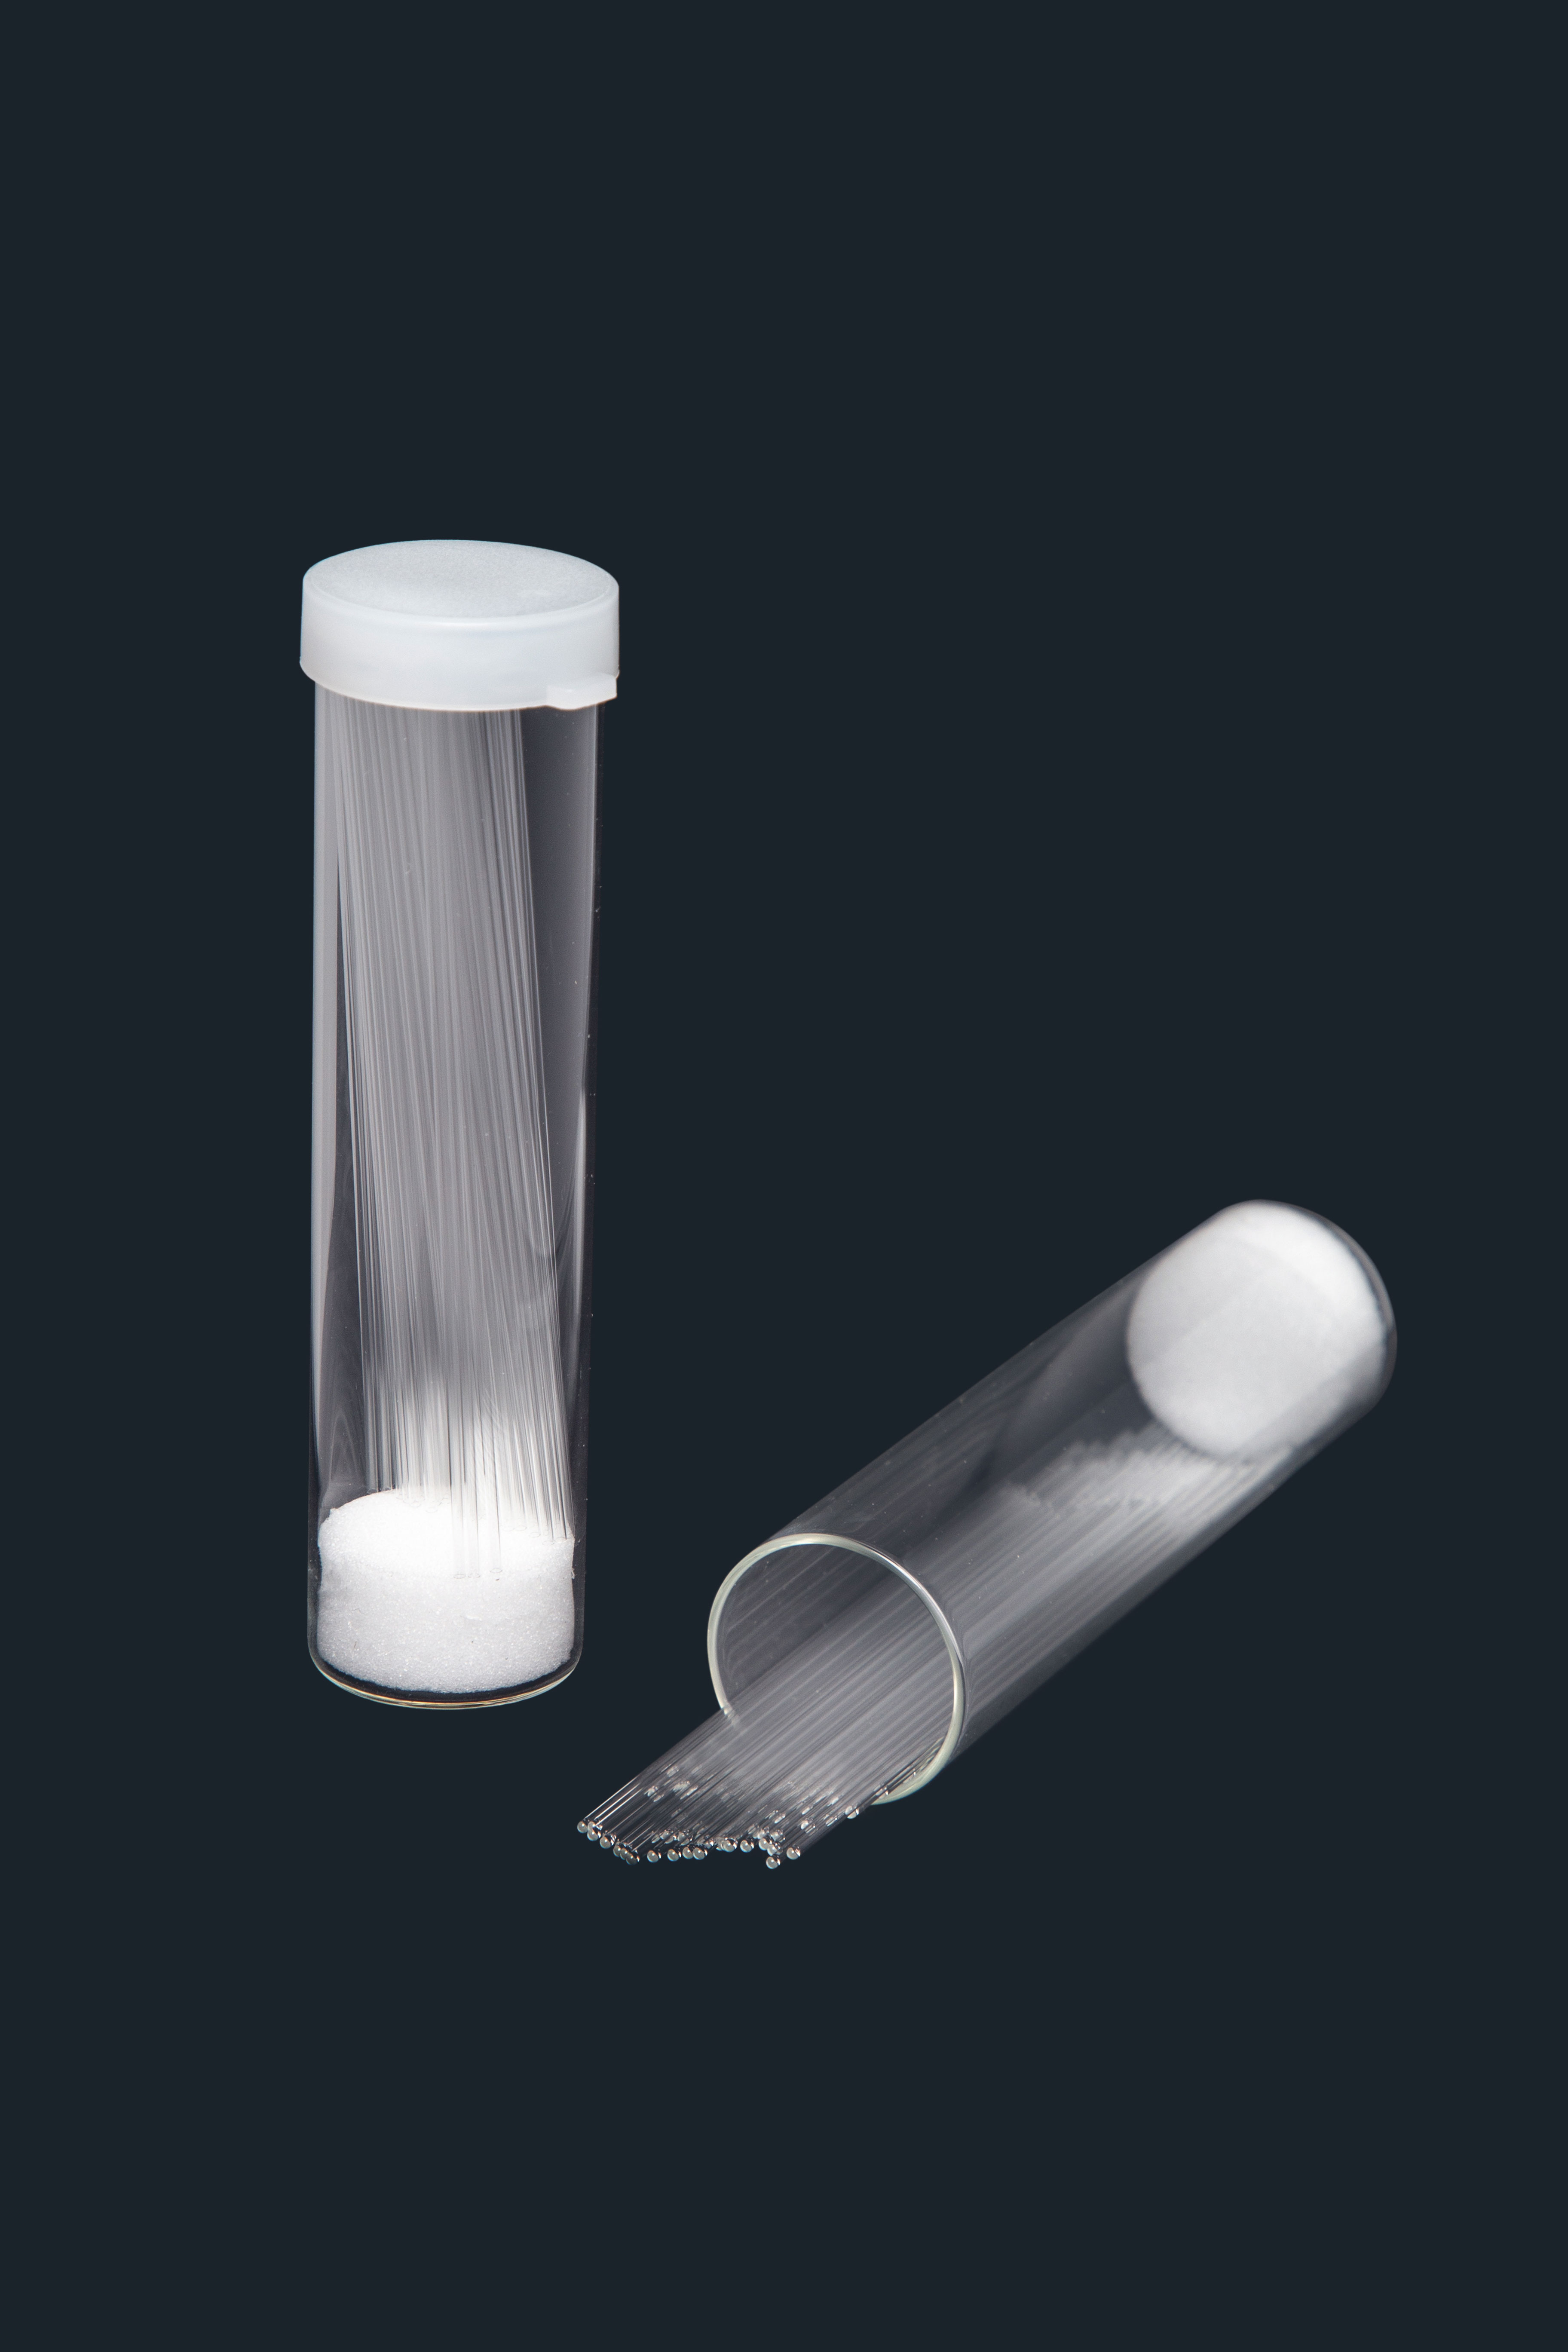 Capillary tubes